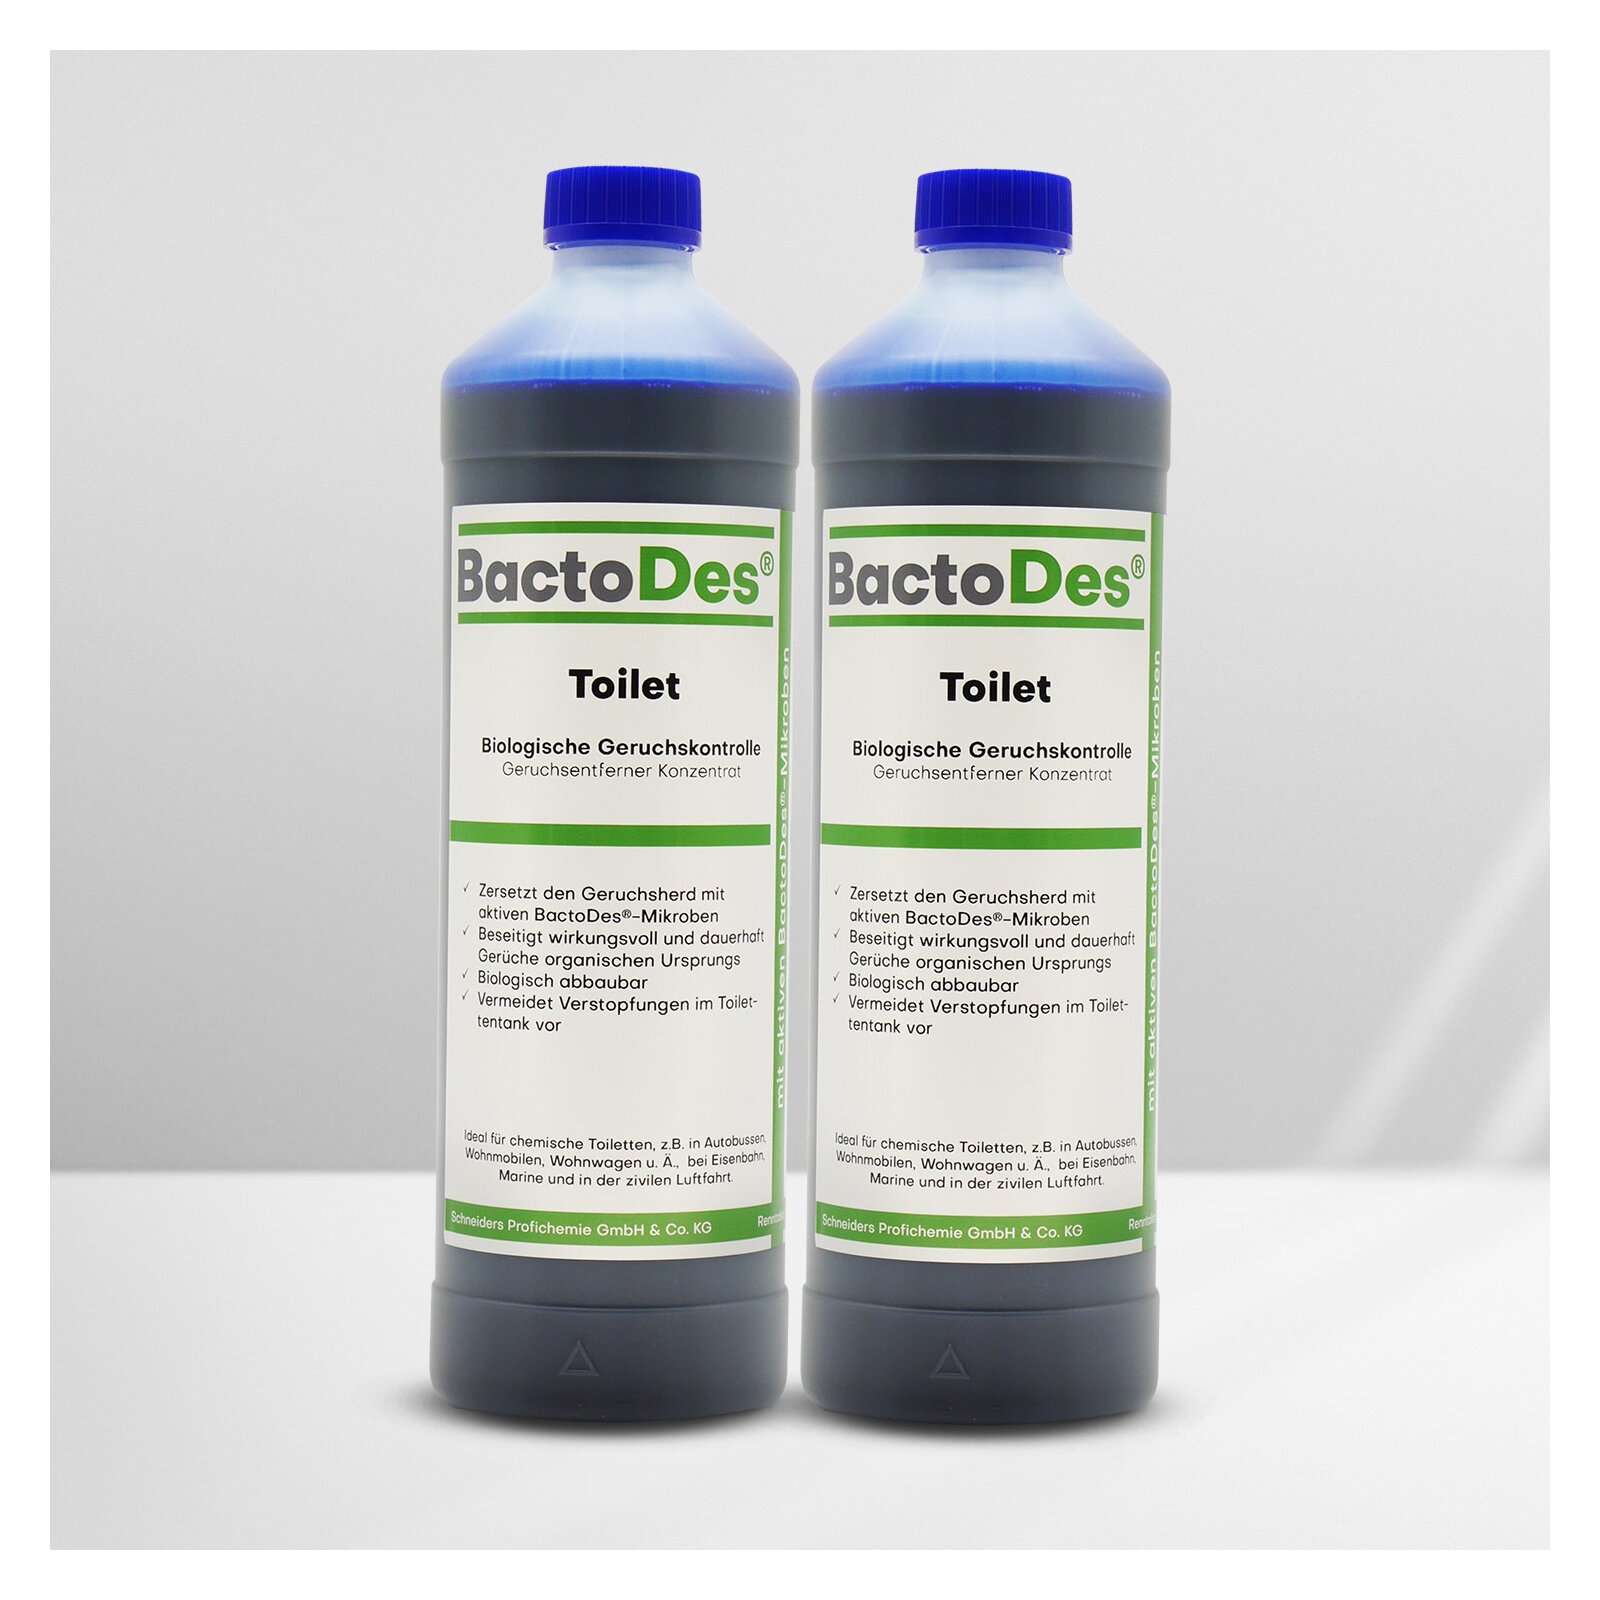 BactoDes-Toilet biologischer Geruchsentferner für Campingtoiletten 2x1L Set